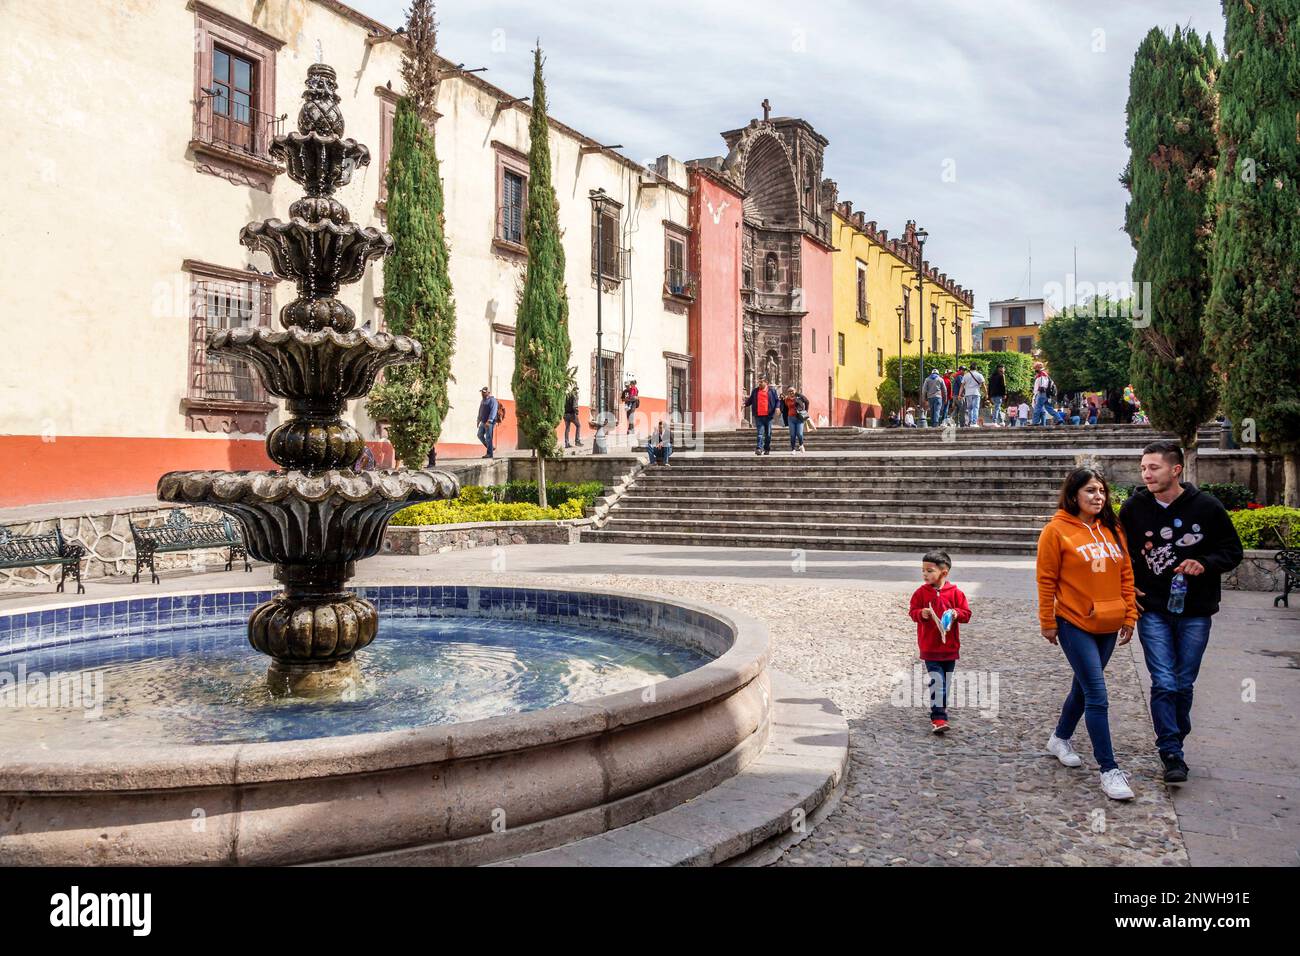 San Miguel de Allende Guanajuato Mexico, historisches Zentrum von Historico Central, Zona Centro, öffentlicher Brunnen, Plaza Civica Civic Square, männliche Männer, weibliche Stockfoto